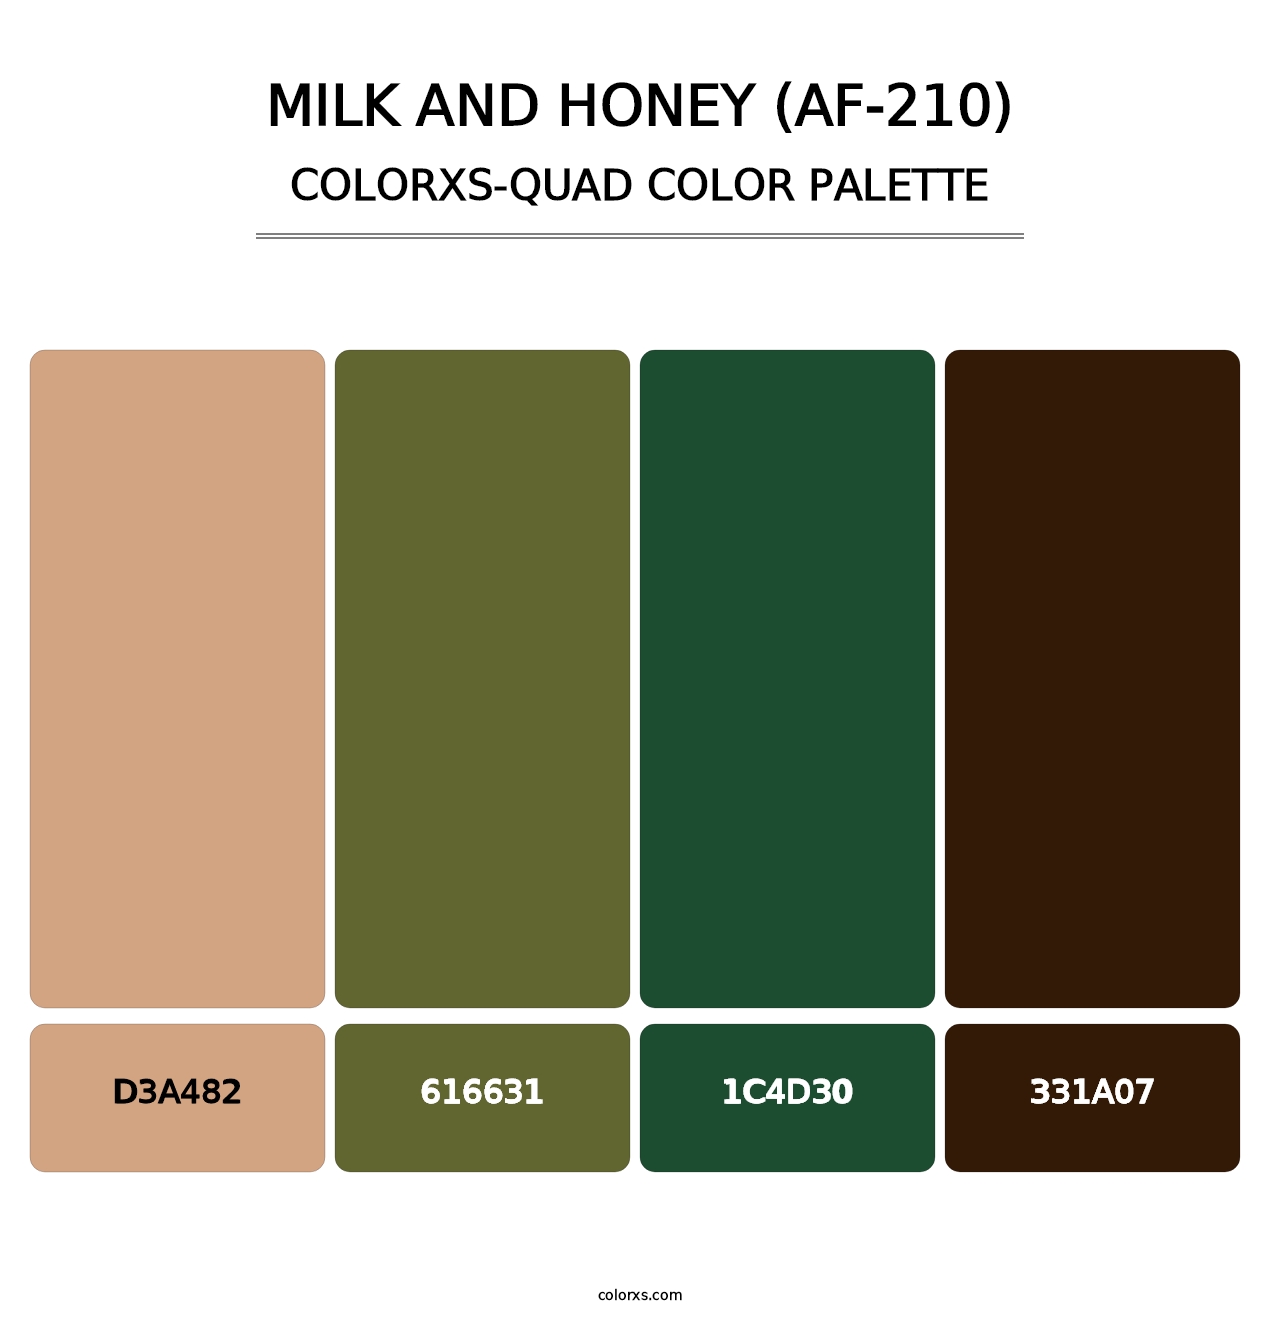 Milk and Honey (AF-210) - Colorxs Quad Palette